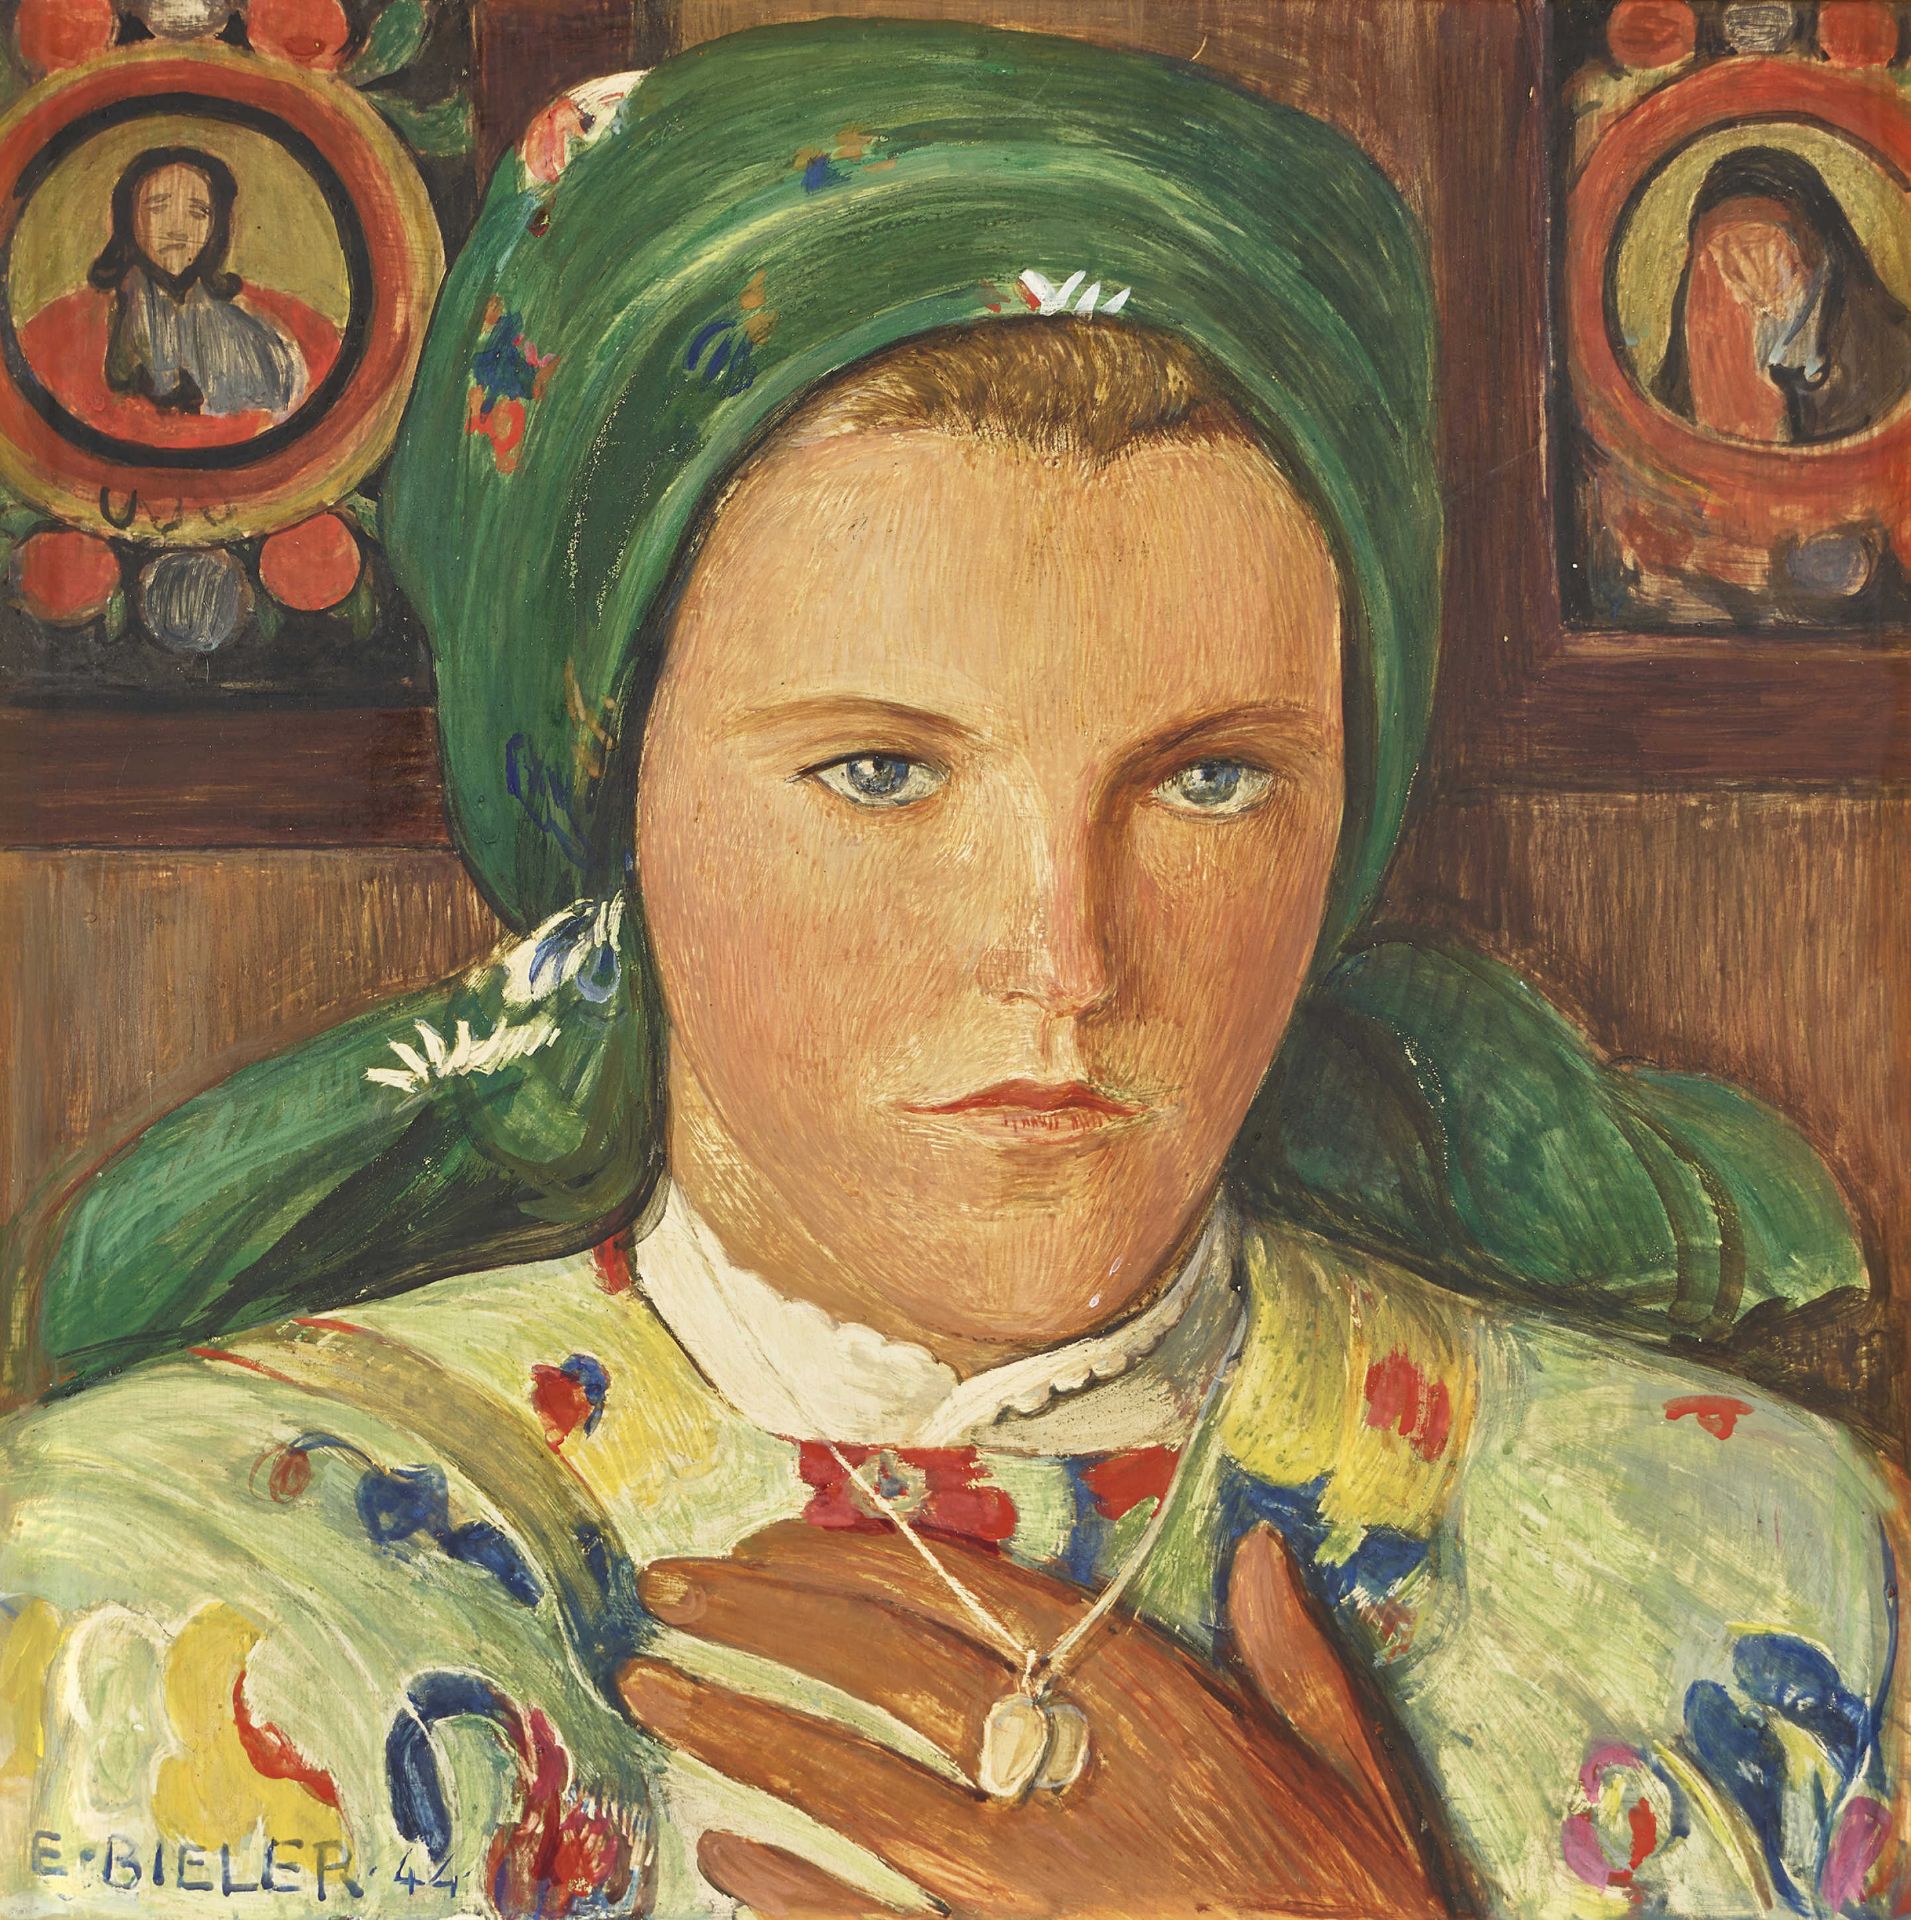 BIÉLER, ERNEST: Portrait de jeune valaisanne au foulard et au collier.